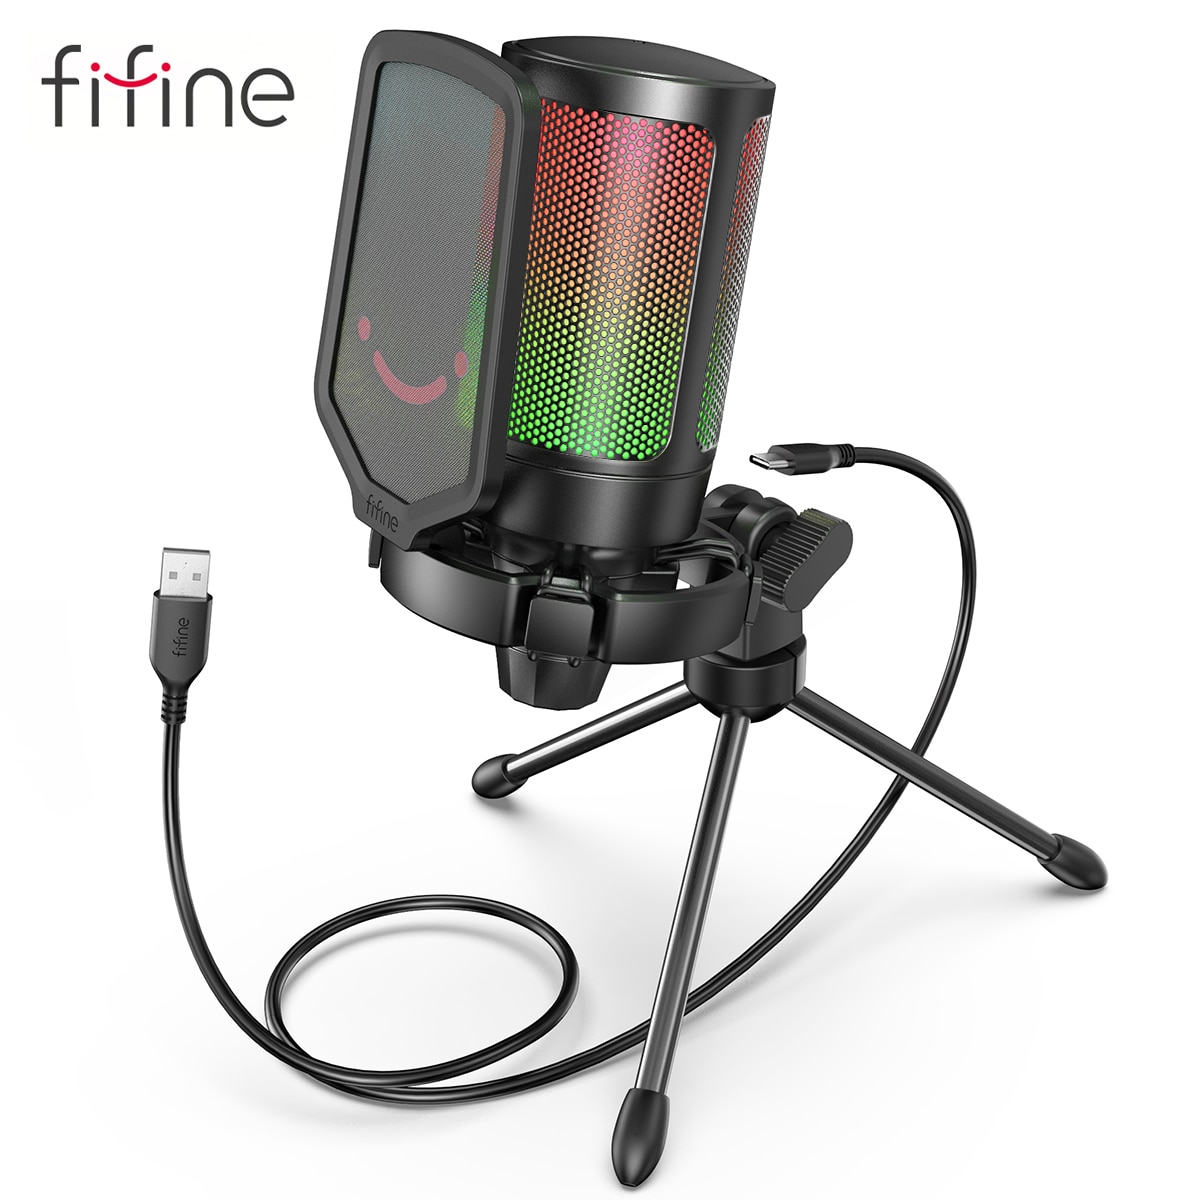 Microfone gamer Fifine ampligame RGB – Com Pop filter e tripé – USB